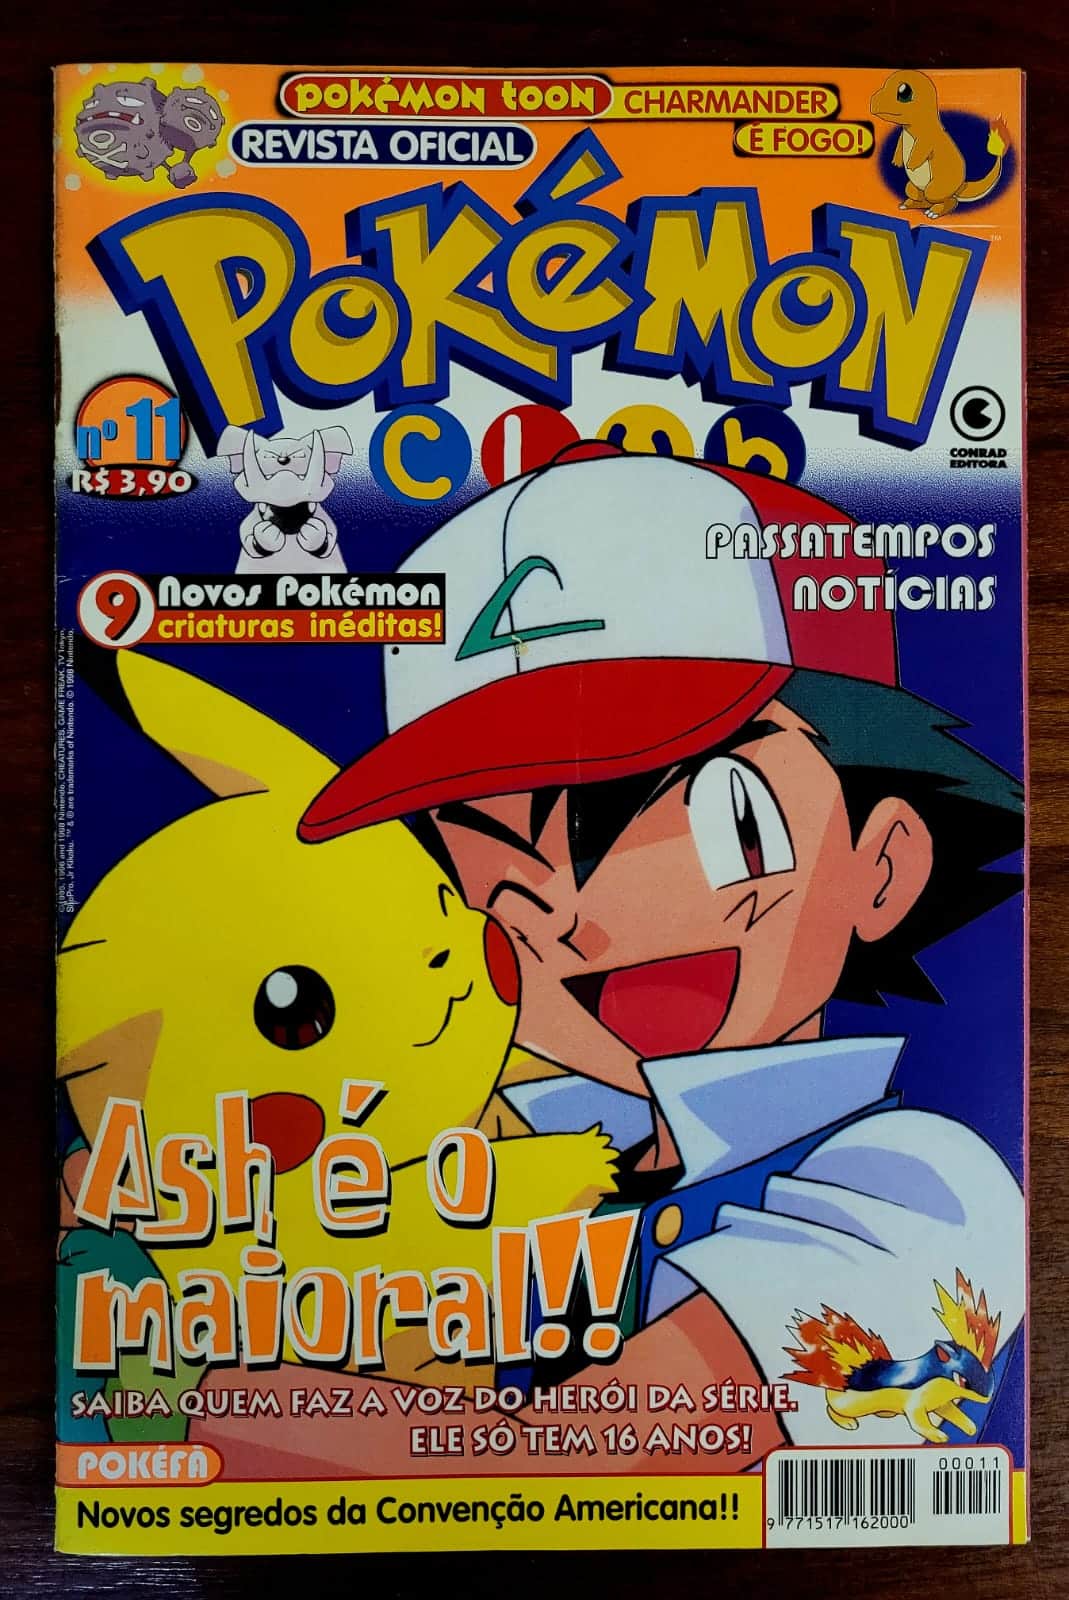 Febre nos anos 2000, cartas de desenho Pokémon voltam à moda com